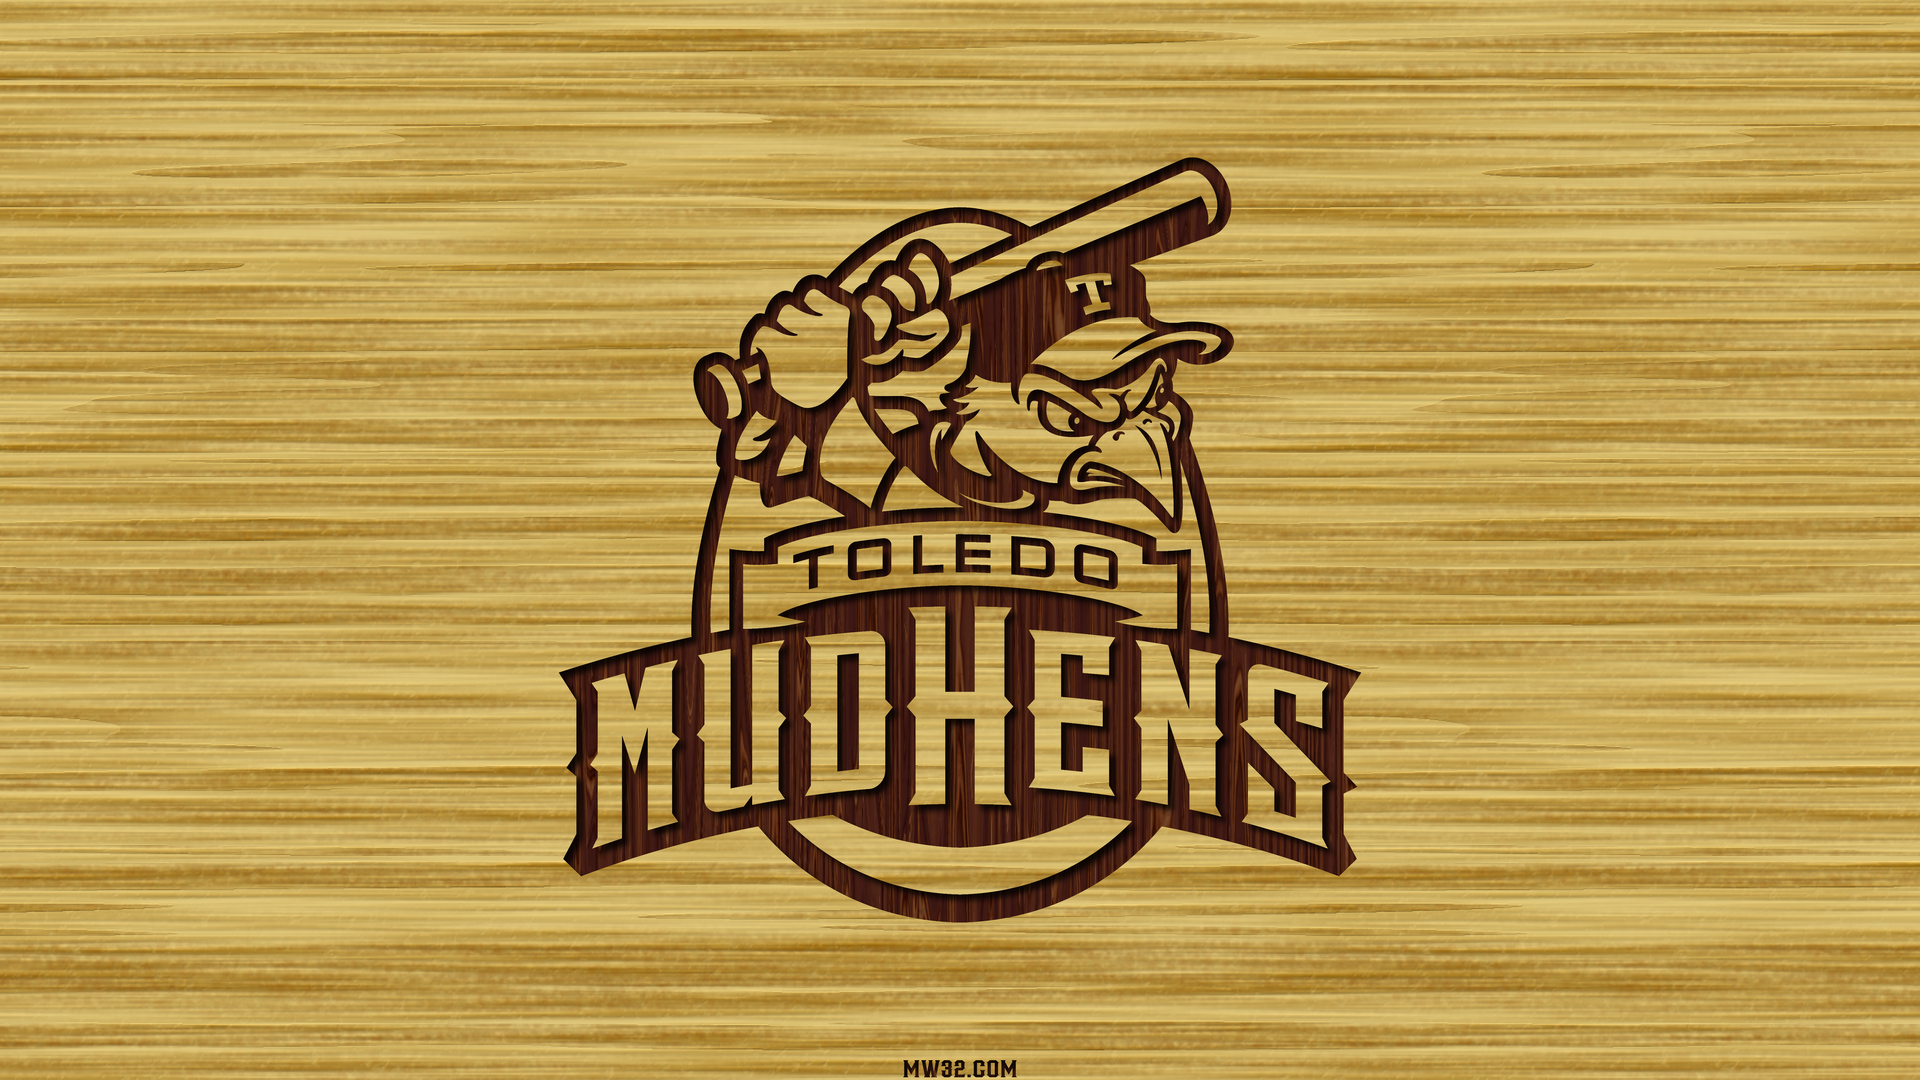 Toledo Mud Hens Wallpaper